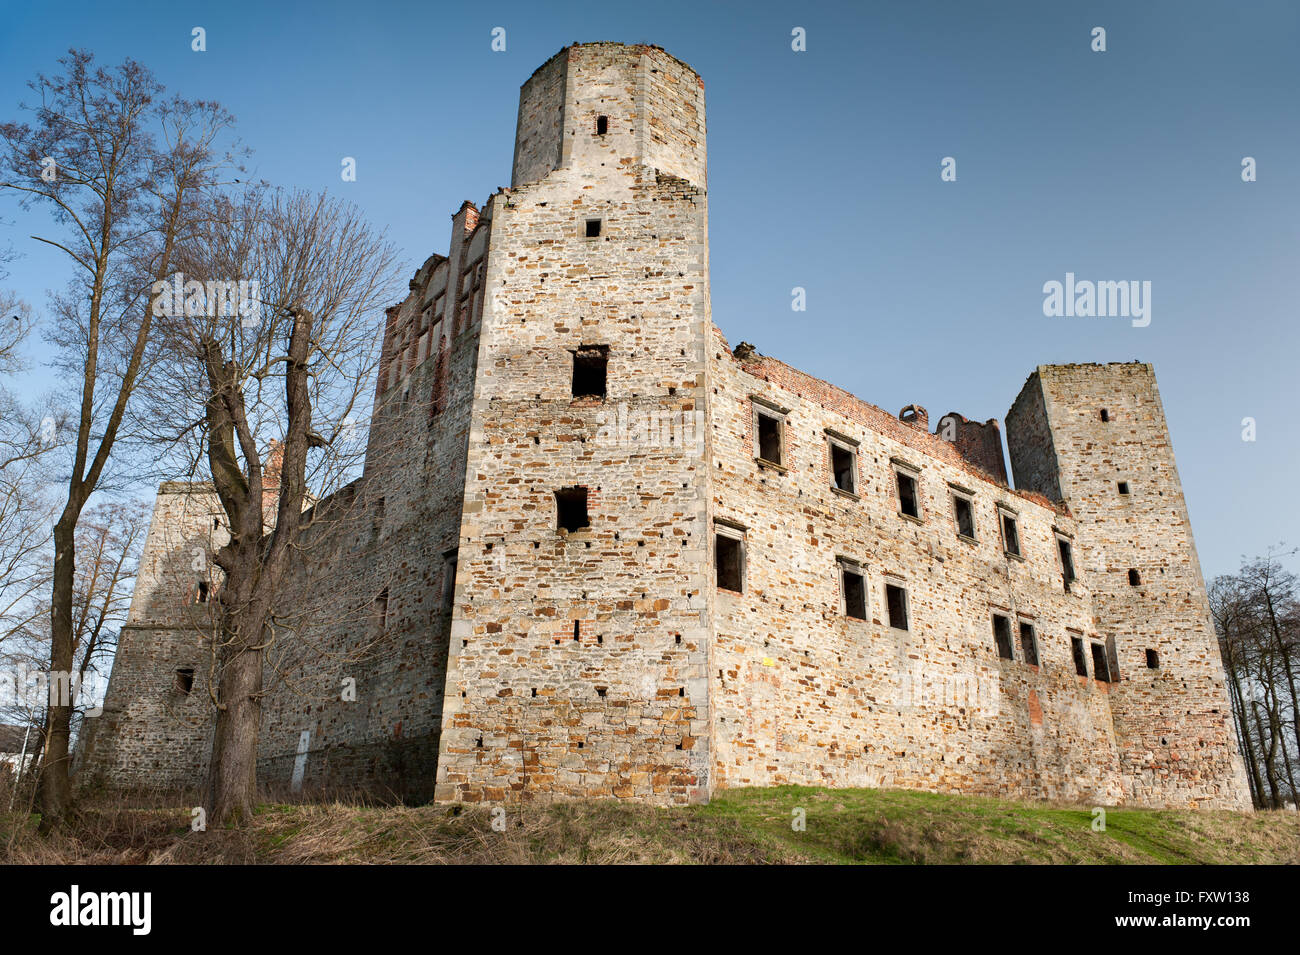 Blick auf Drzewica Burgruine, Zamek w Drzewicy von 1527-1535 in Polen, Europa, Sightseeing Gebäude, Ort zu reisen. Stockfoto